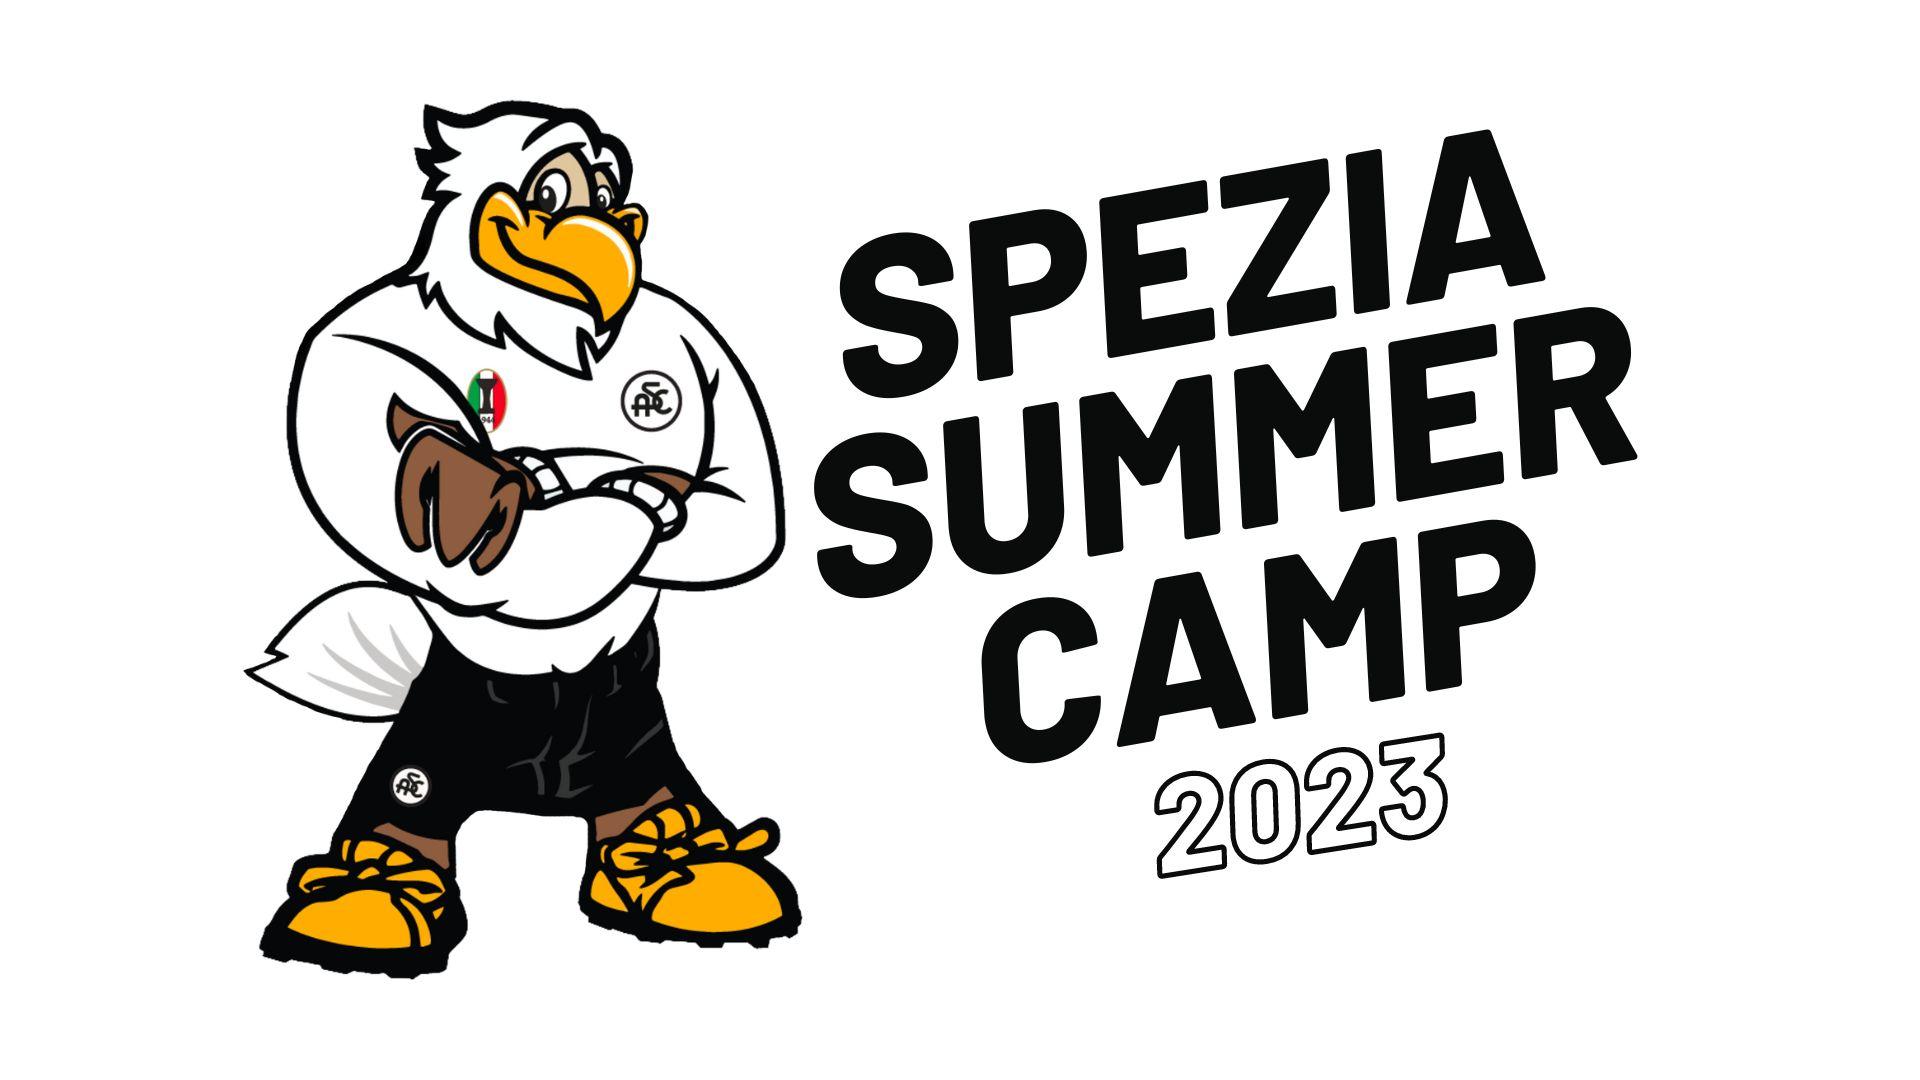 Spezia Summer Camp 2023